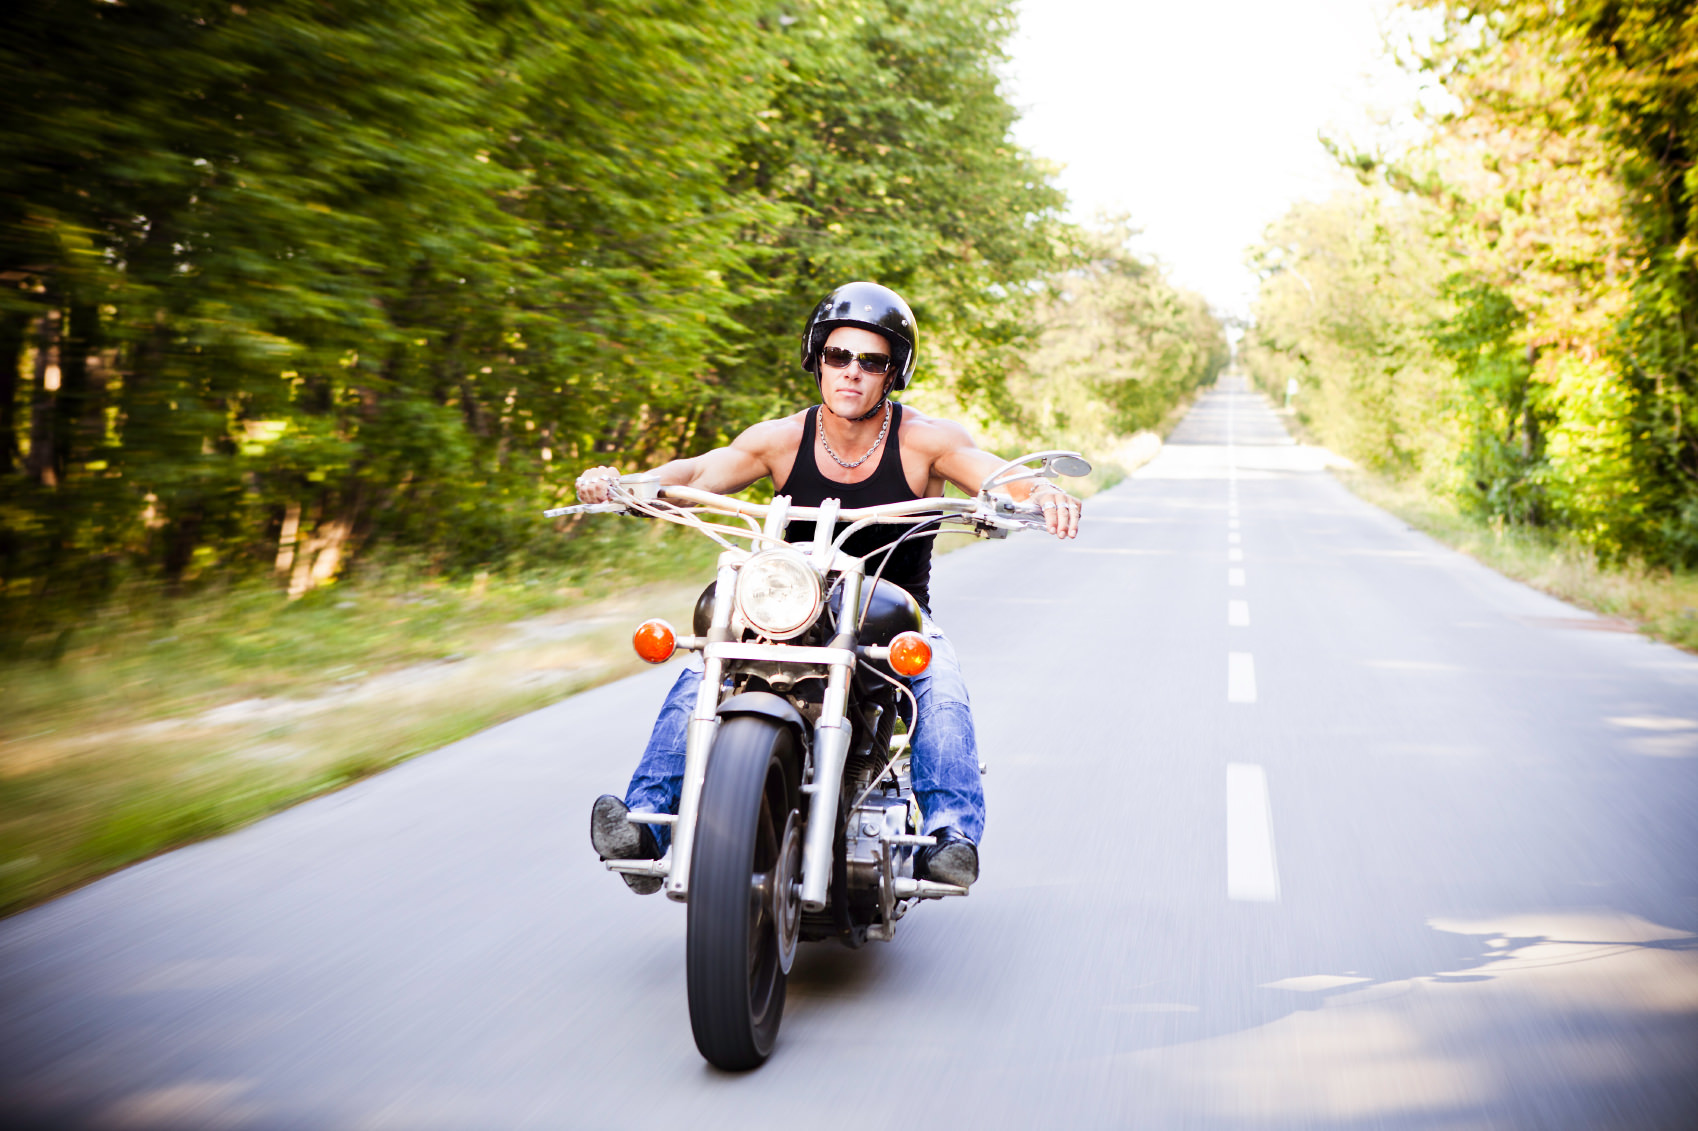 Wer will mit mir Biken? – Finde deinen Motorrad-Partner! – thepalefour.de